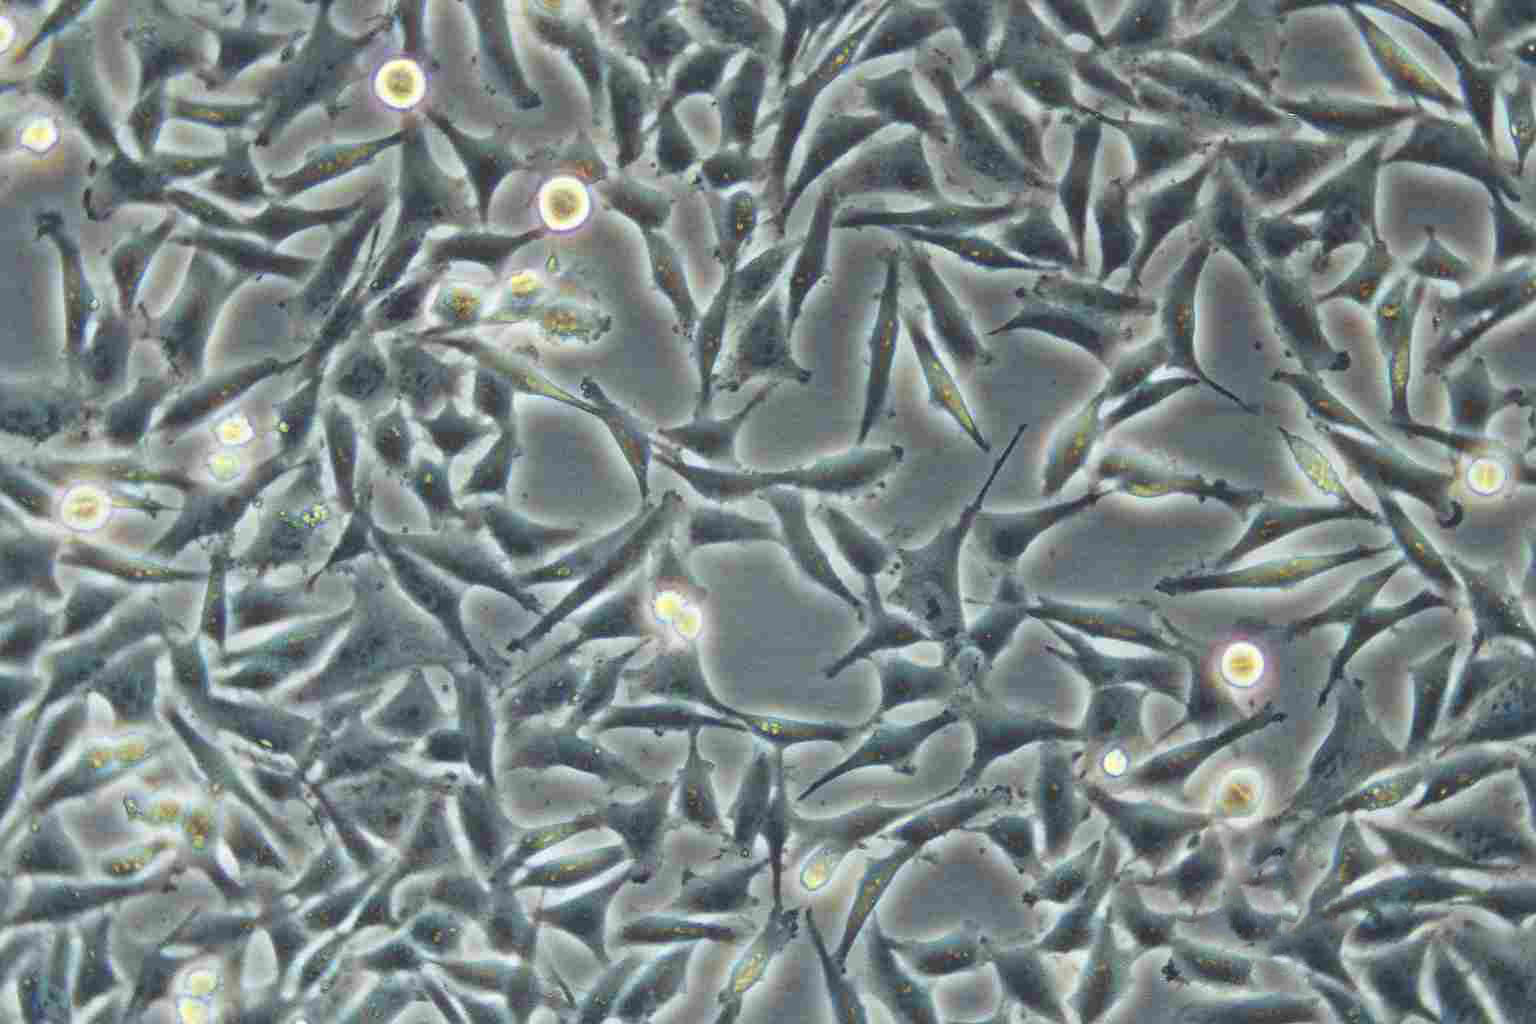 SW756 epithelioid cells人子宫鳞状癌细胞系,SW756 epithelioid cells